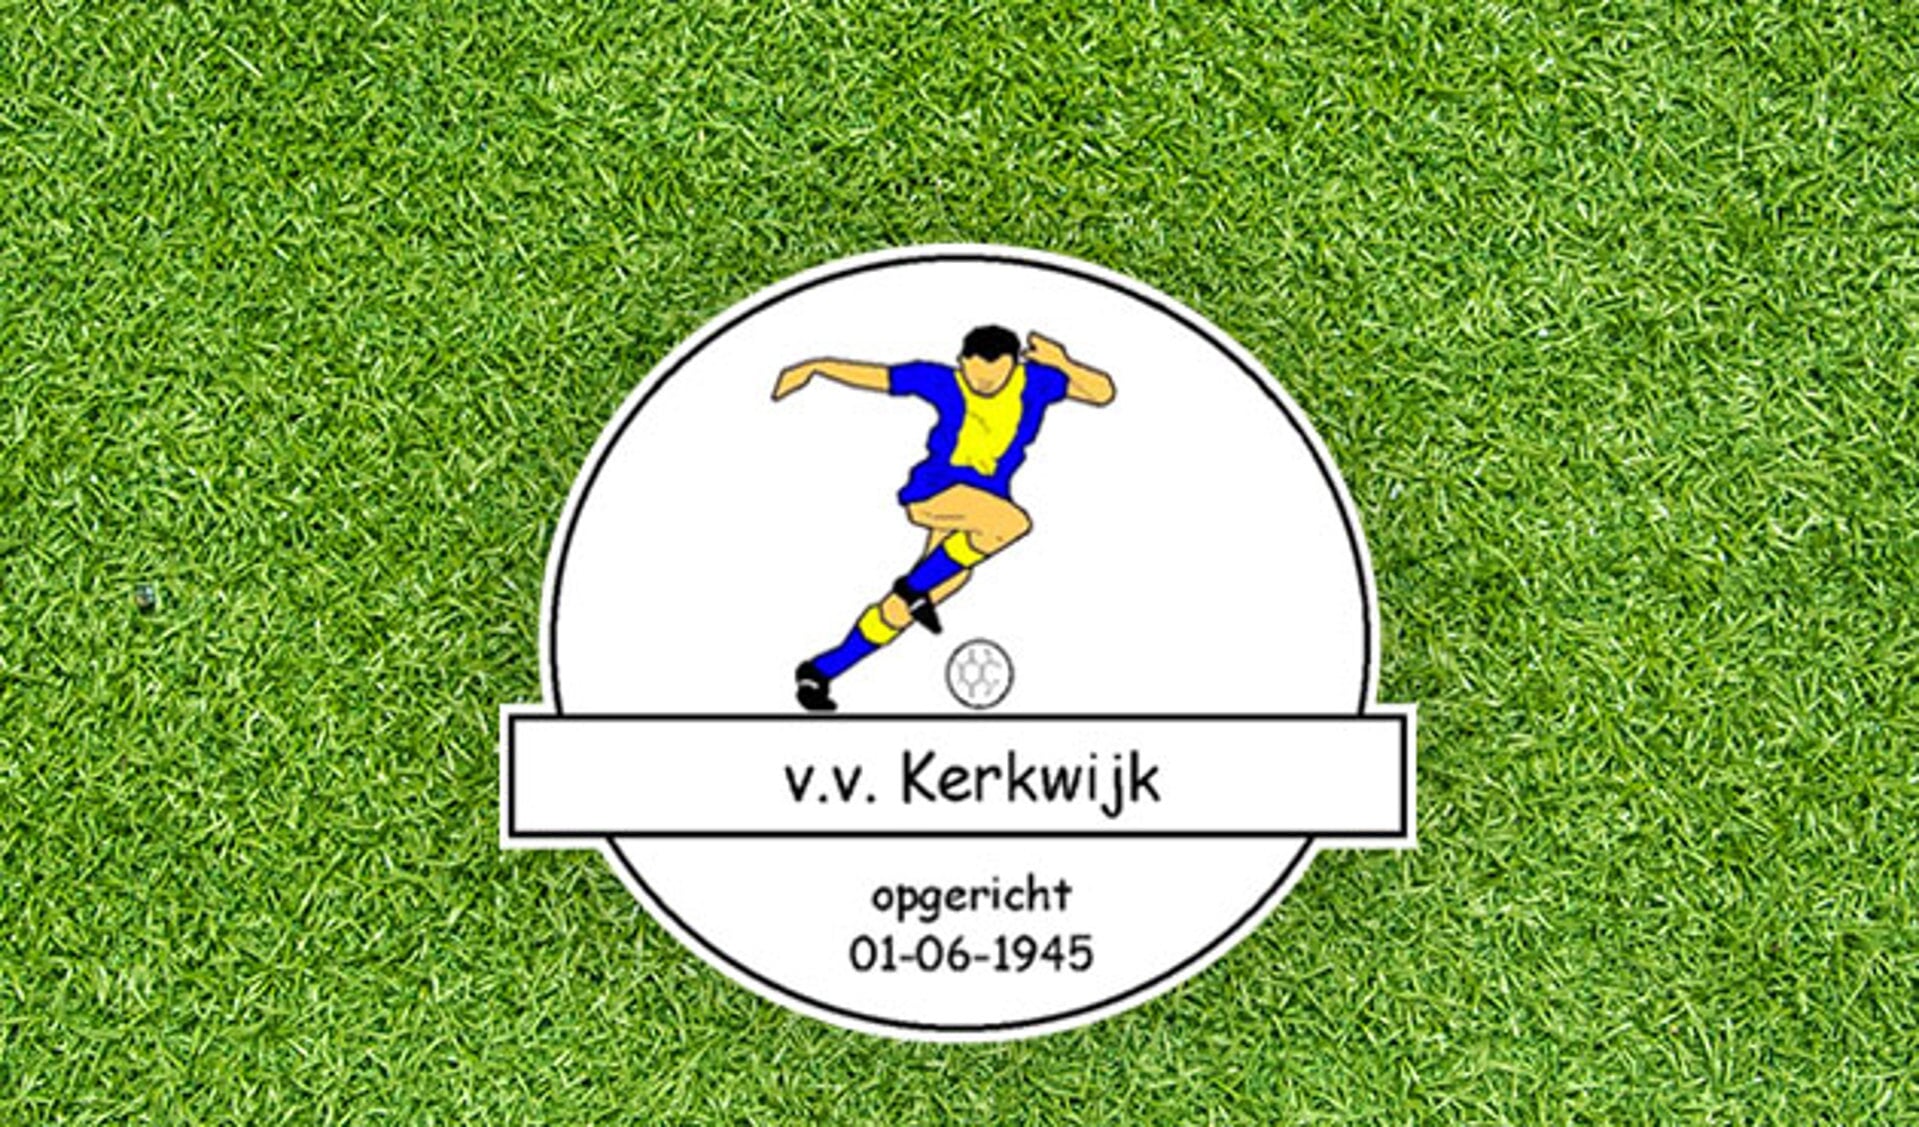 Arie Kooijman treedt wegens revalidatie terug bij Kerkwijk